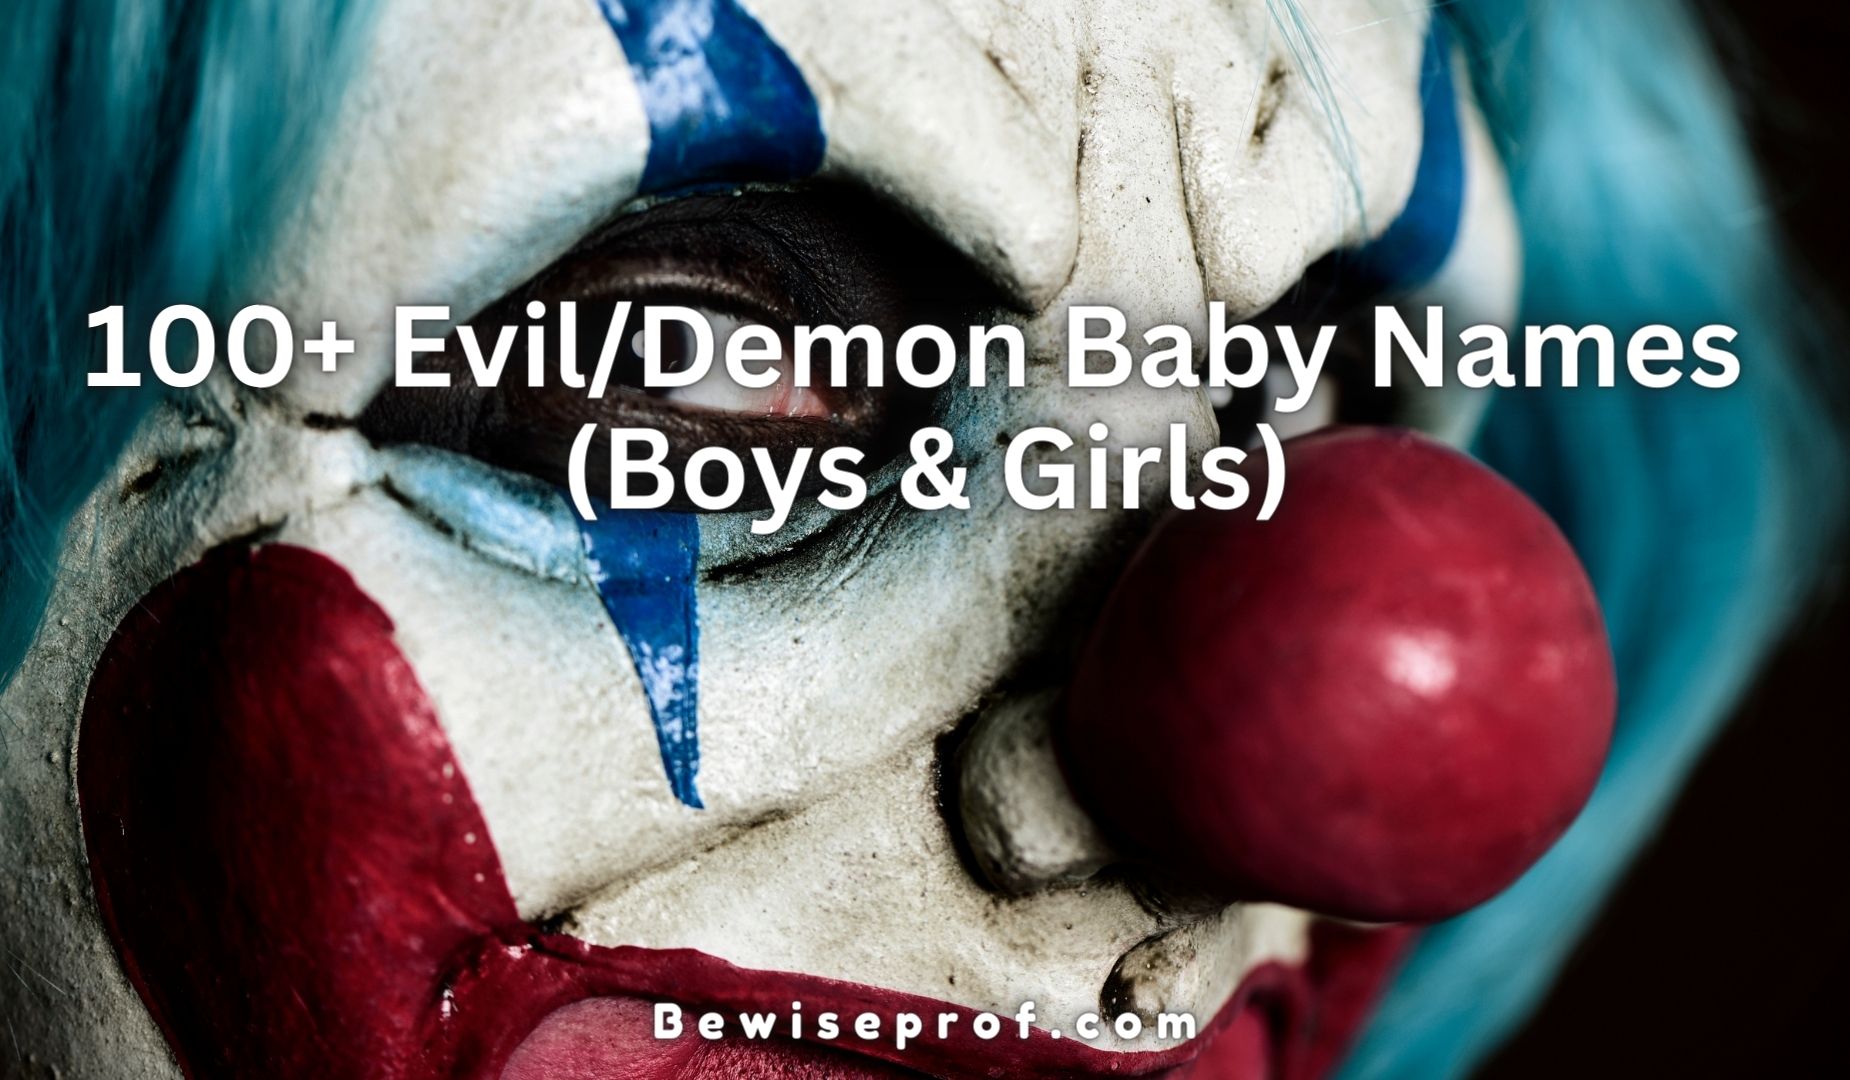 100+ Evil/Demon Baby Names (Boys & Girls)